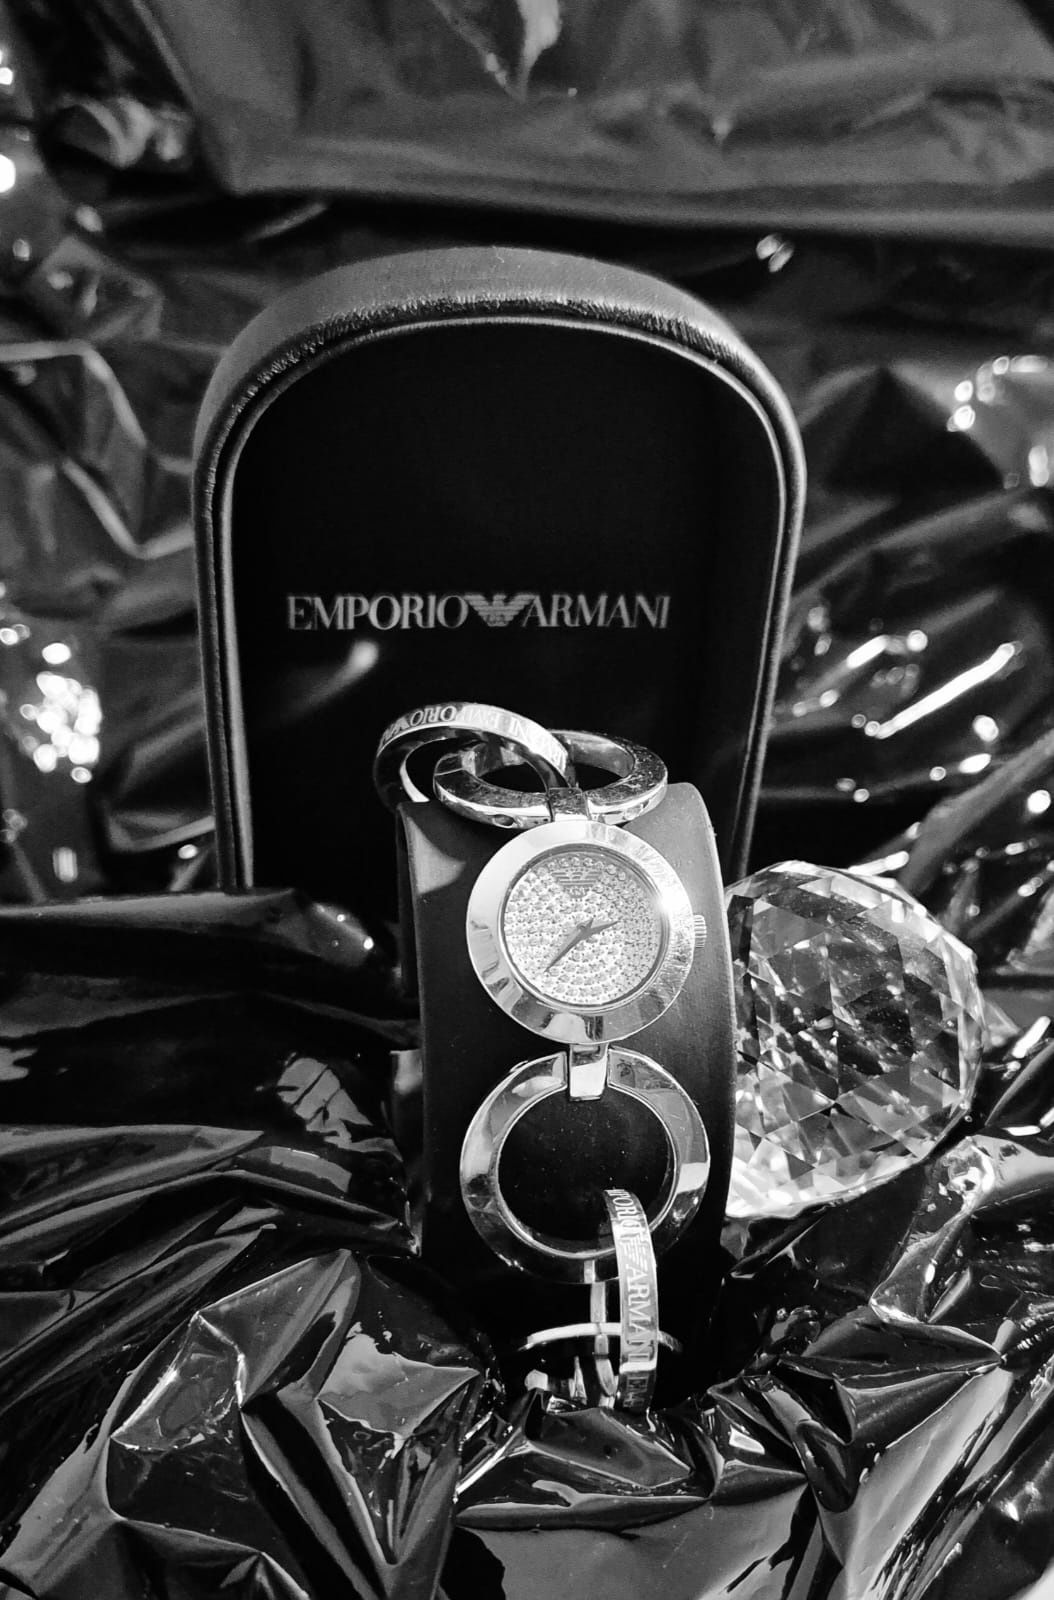 Zegarek Emporio Armani z cyferblatem wysadzanym kryształkami Swarovski